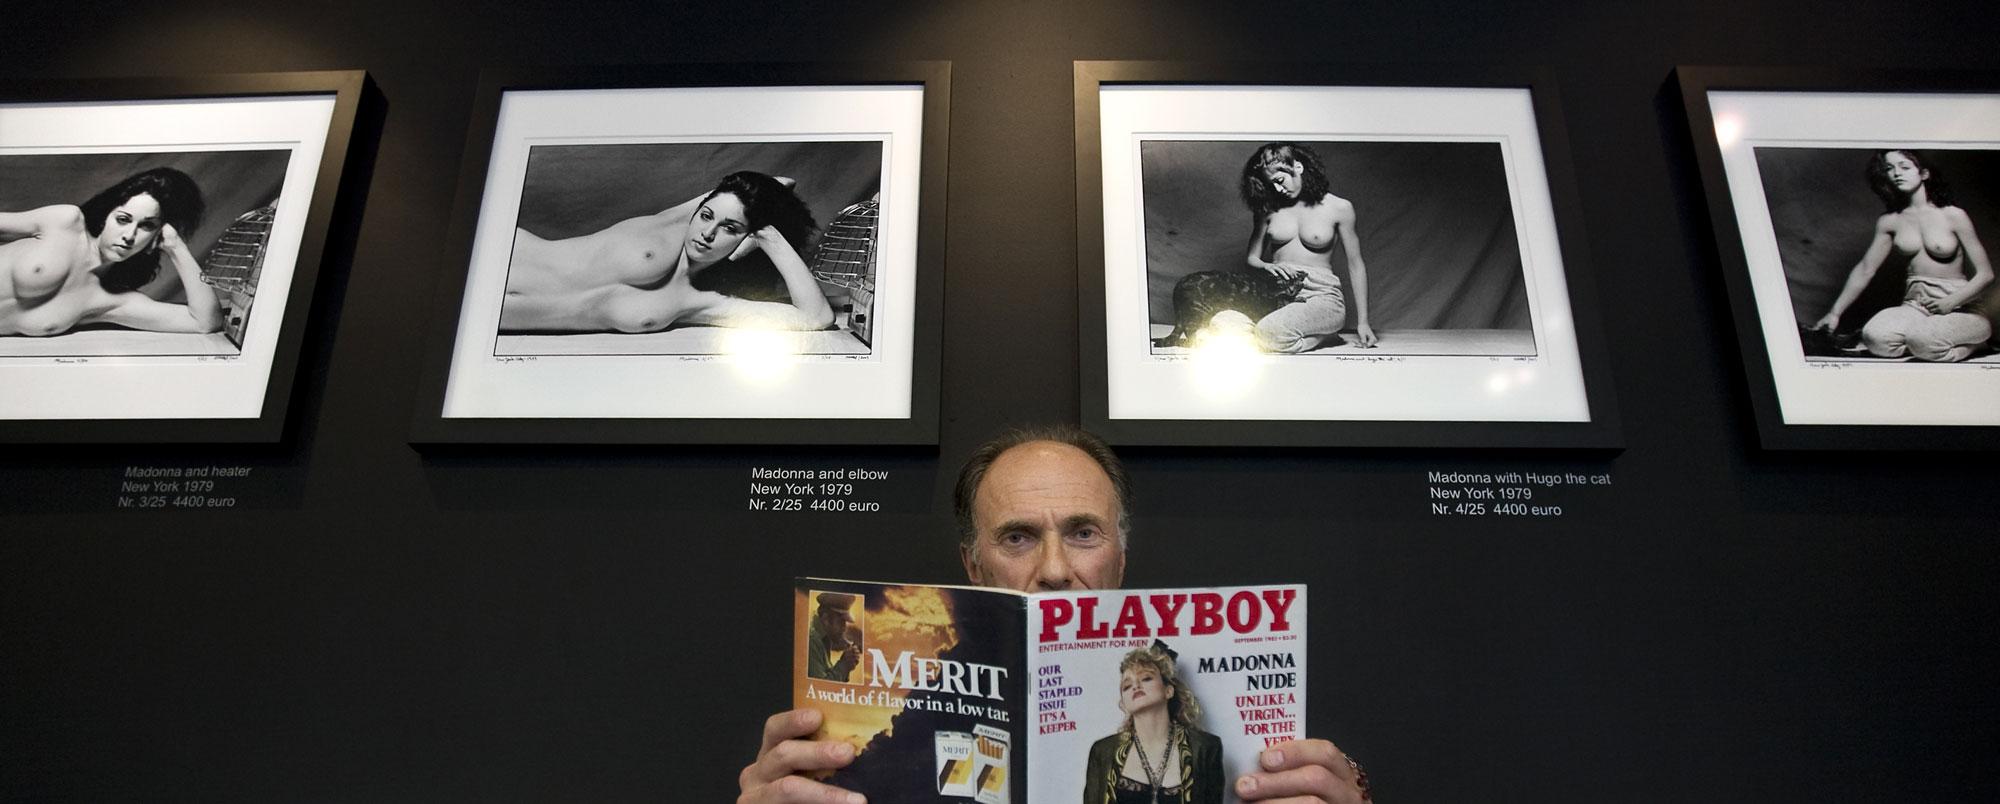 Madonna à 21 ans, posant nue devant le phtographe Martin Schreiber. [AFP PHOTO/ANP - ADE JOHNSON]